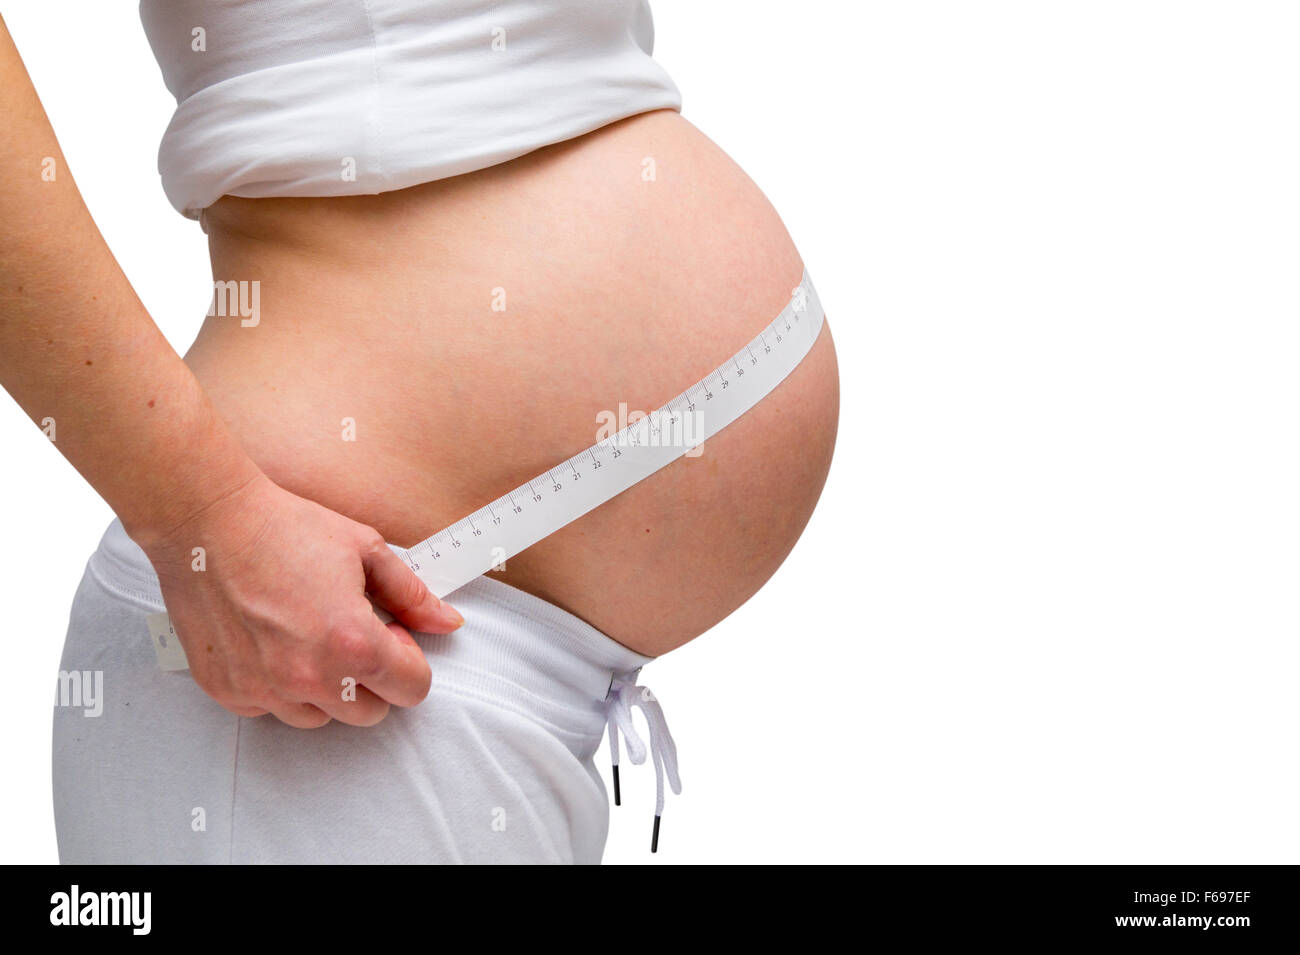 Donne in stato di gravidanza in bianco lounge usura isolato su bianco Foto Stock